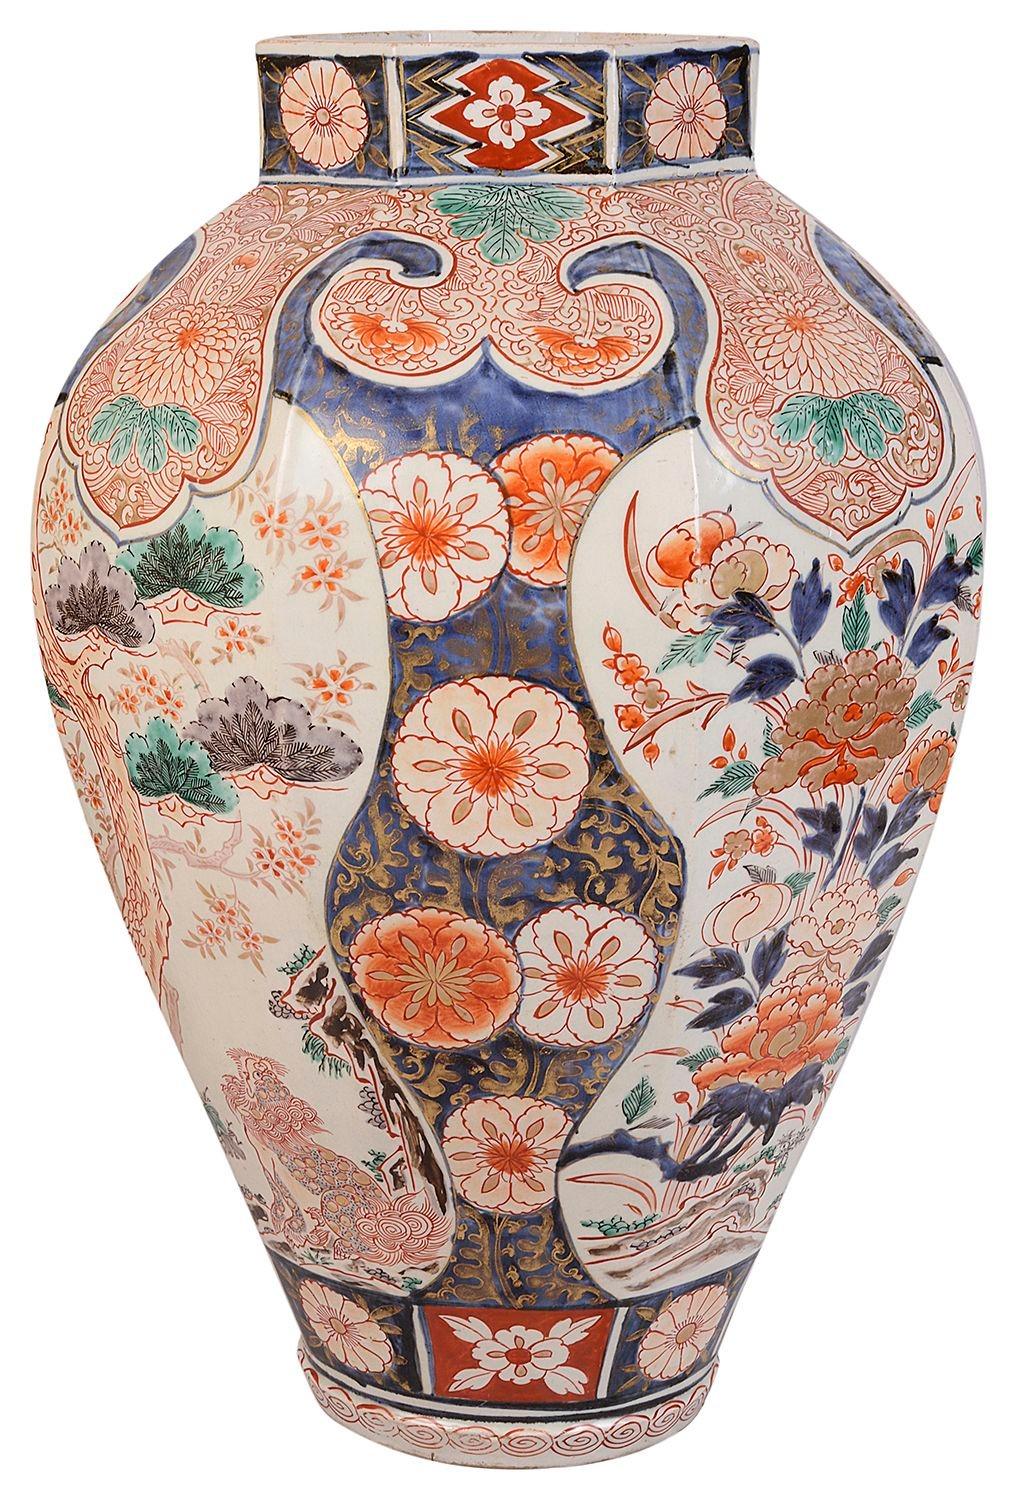 Japanische Imari-Vase/Lampe aus dem 18. Jahrhundert mit wunderschönem, kräftigem Kolorit an den Rändern des Motivs und den Einsätzen, die exotische Vögel und Blumen darstellen, um 1780.
 
Charge 72